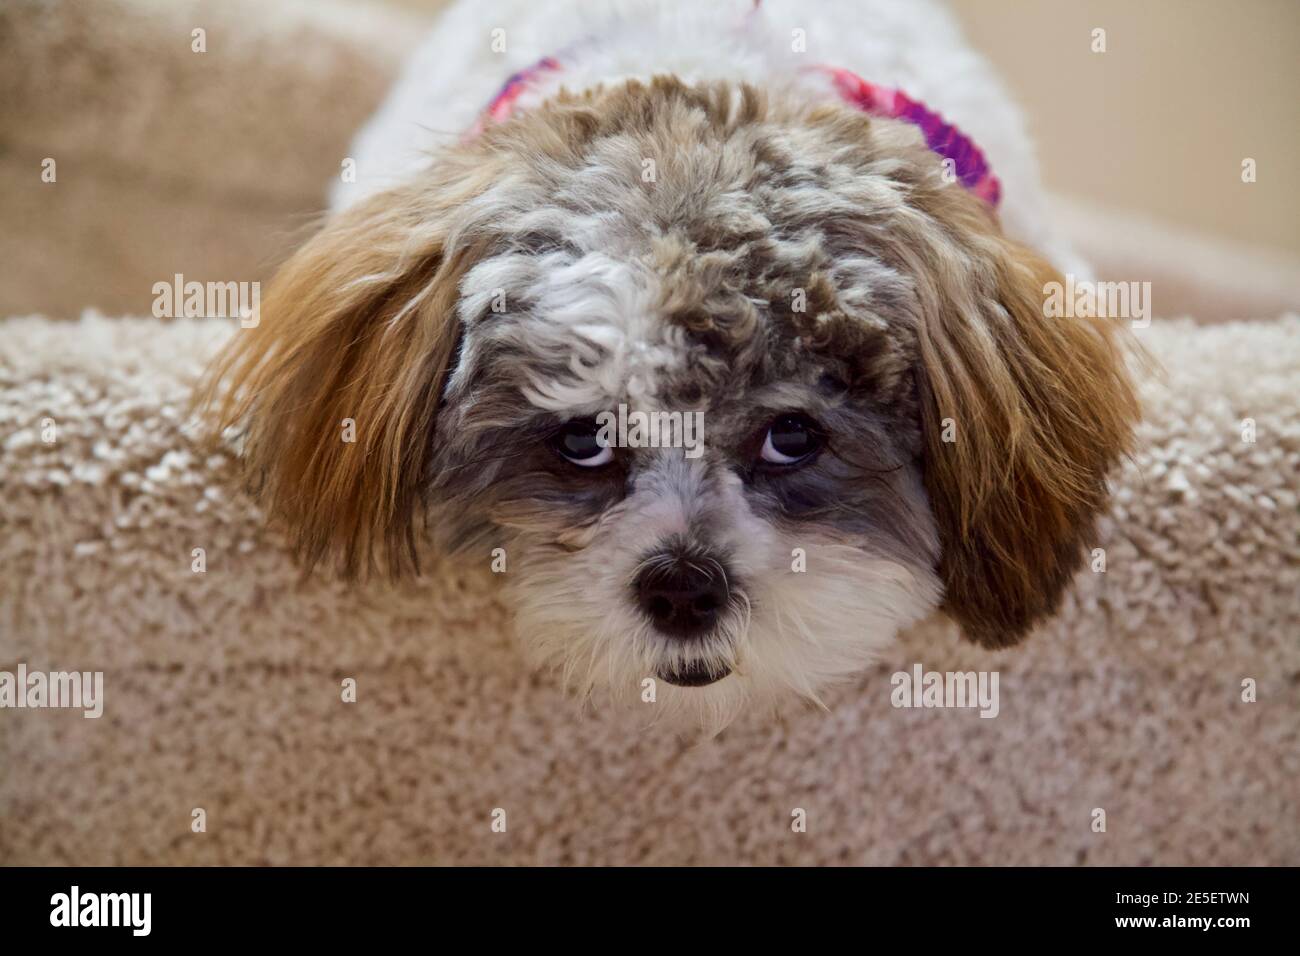 Un cucciolo di Shih-Poo appende la testa su un passo tappezzato con anticipazione nei suoi occhi su ciò che sta per venire dopo. Foto Stock